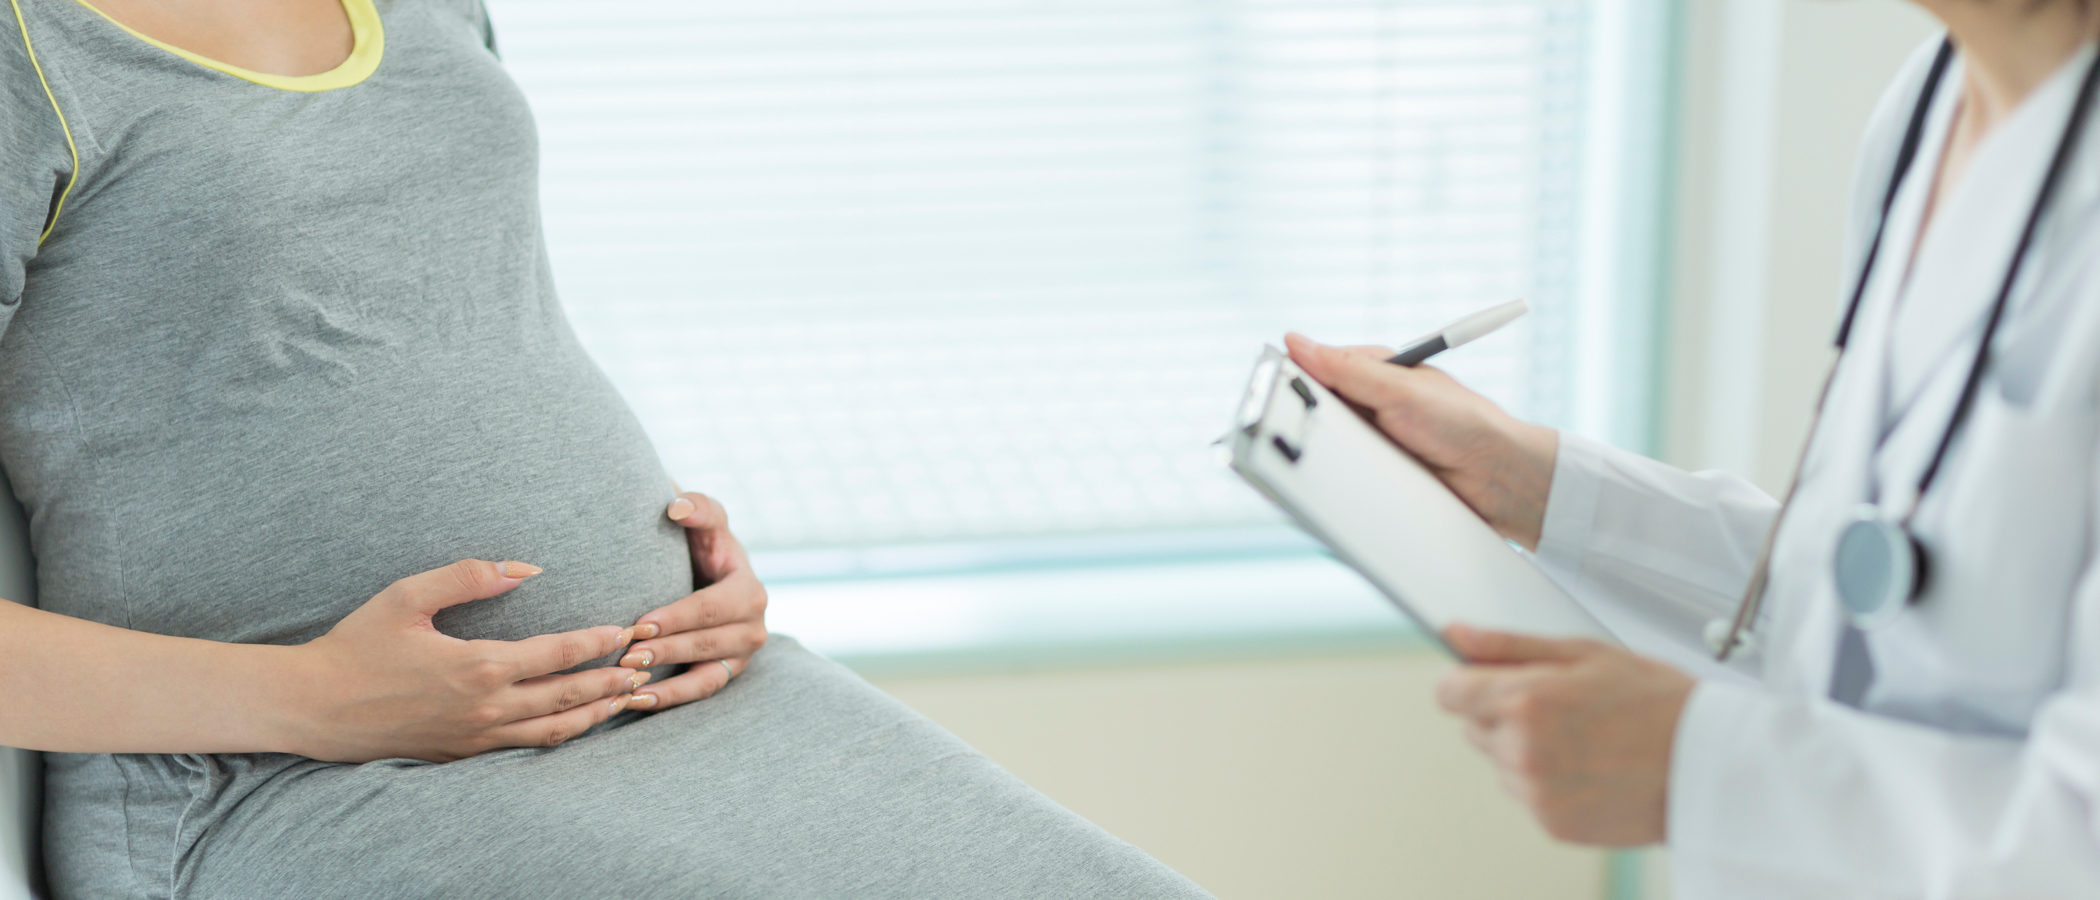 La detección de Síndrome de Down durante el embarazo